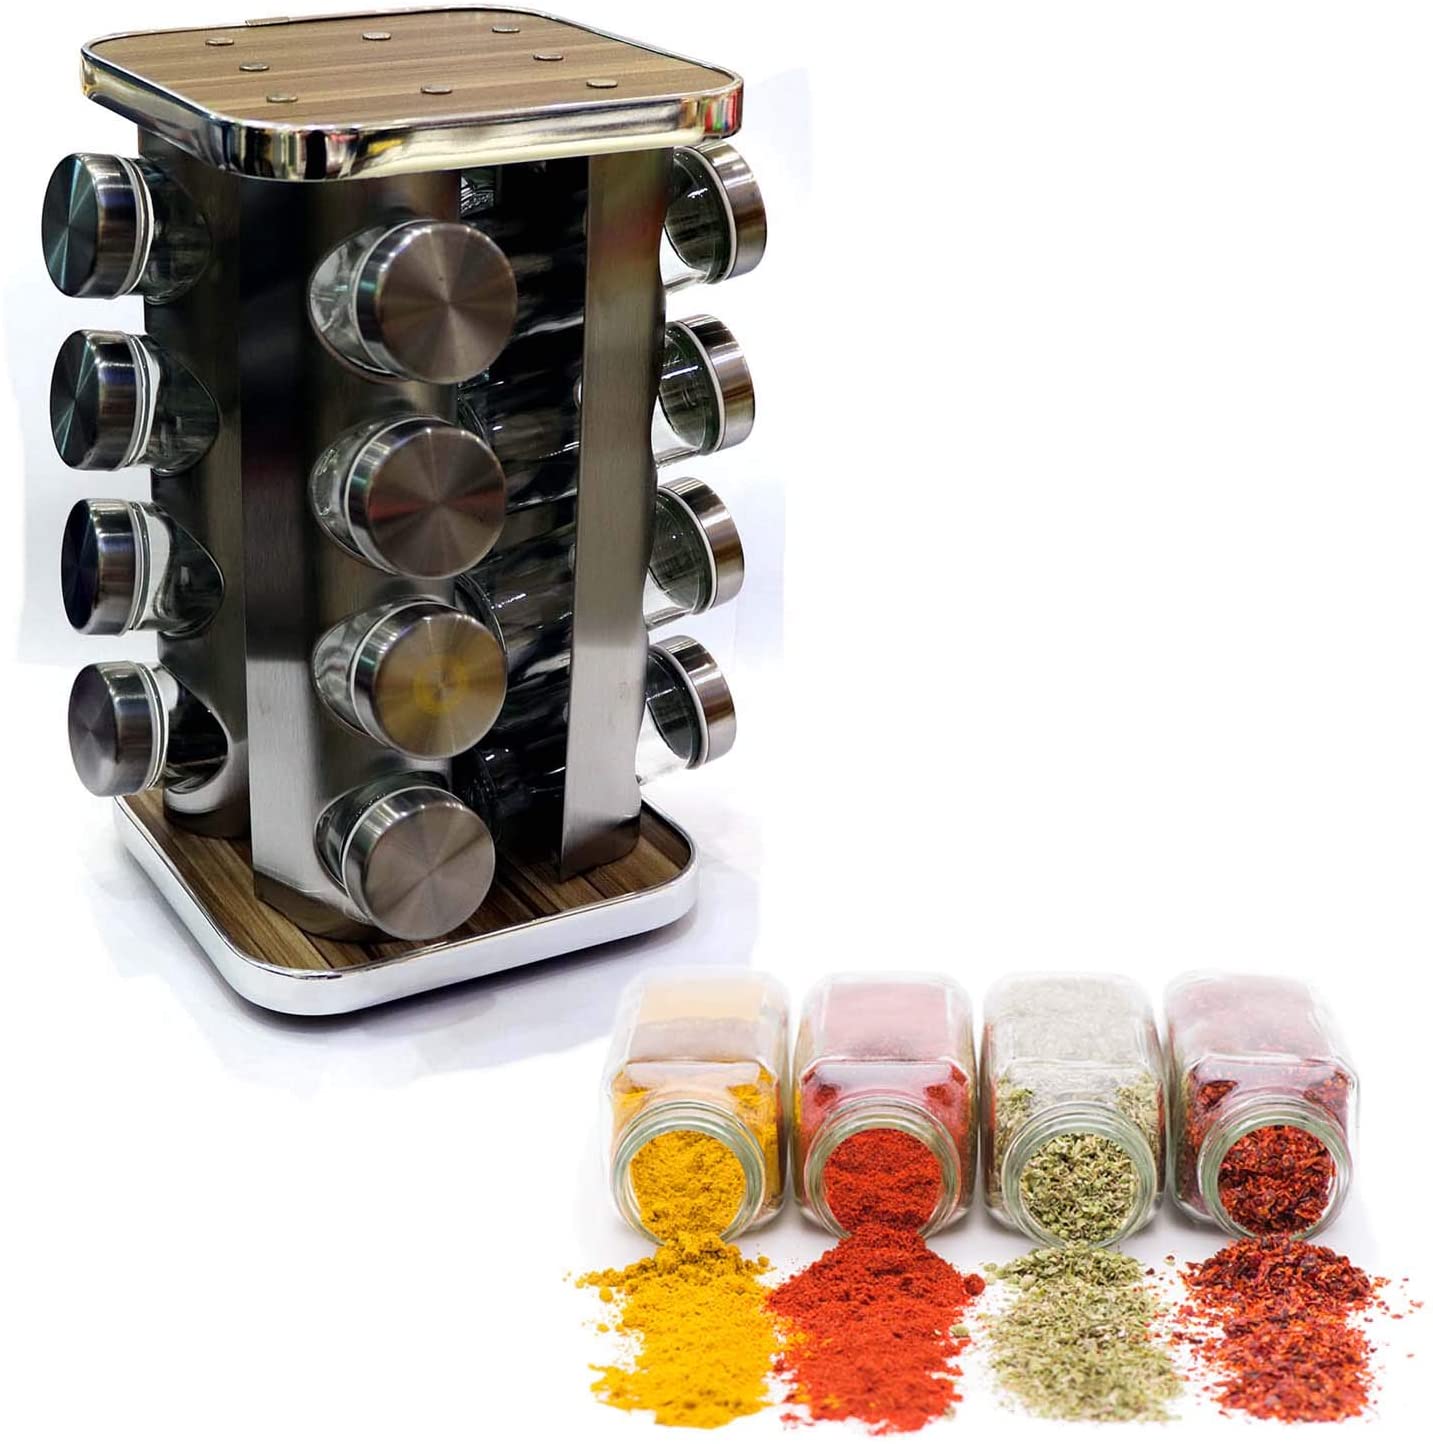 16-Piece Spice Jar Set, Glass Jar Round Stand Silver/Wood W22xL22xH20 Cms